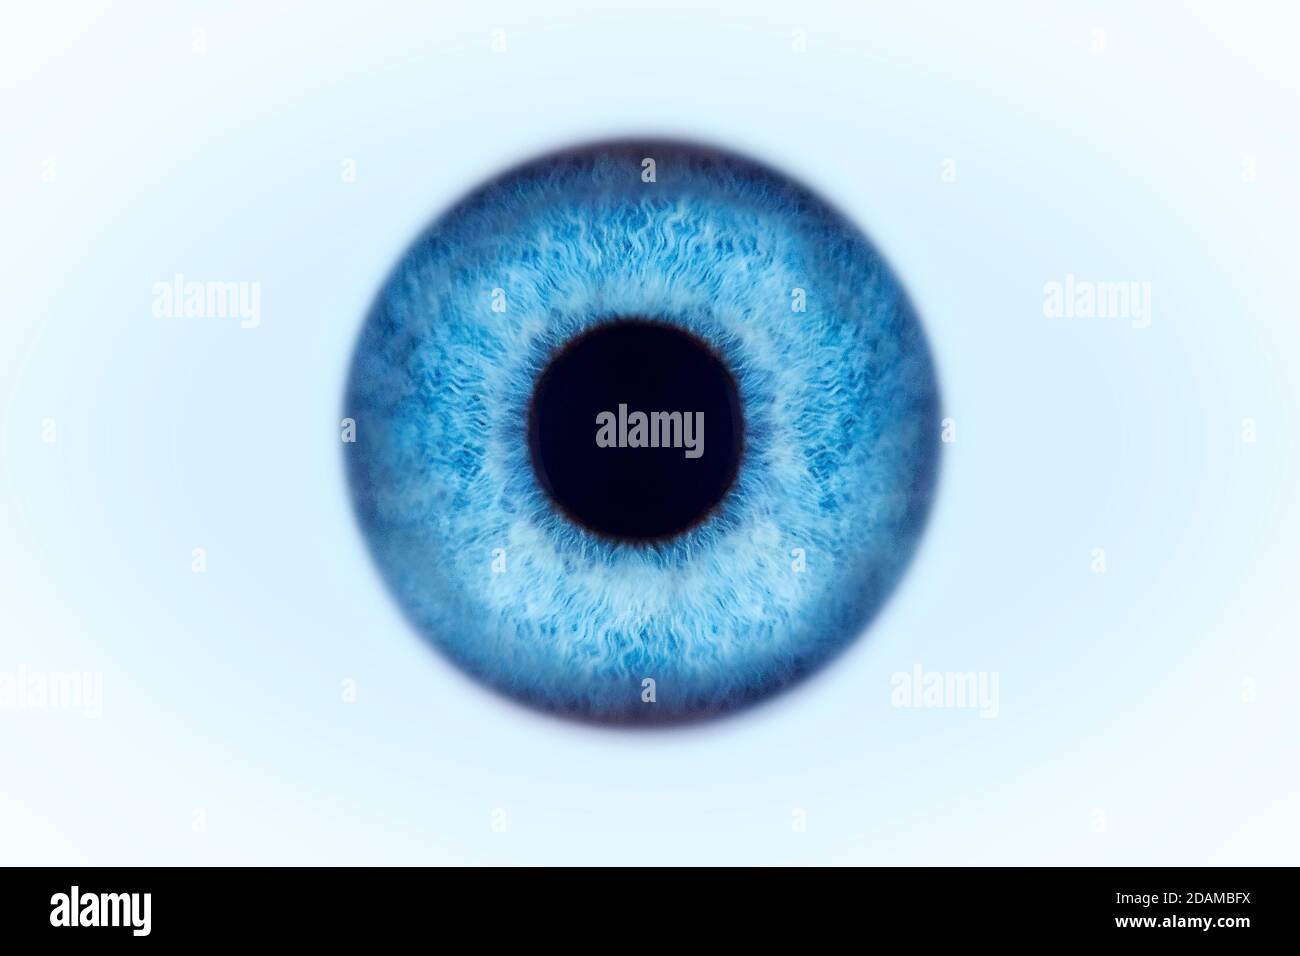 Blue eye, illustration. Stock Photo